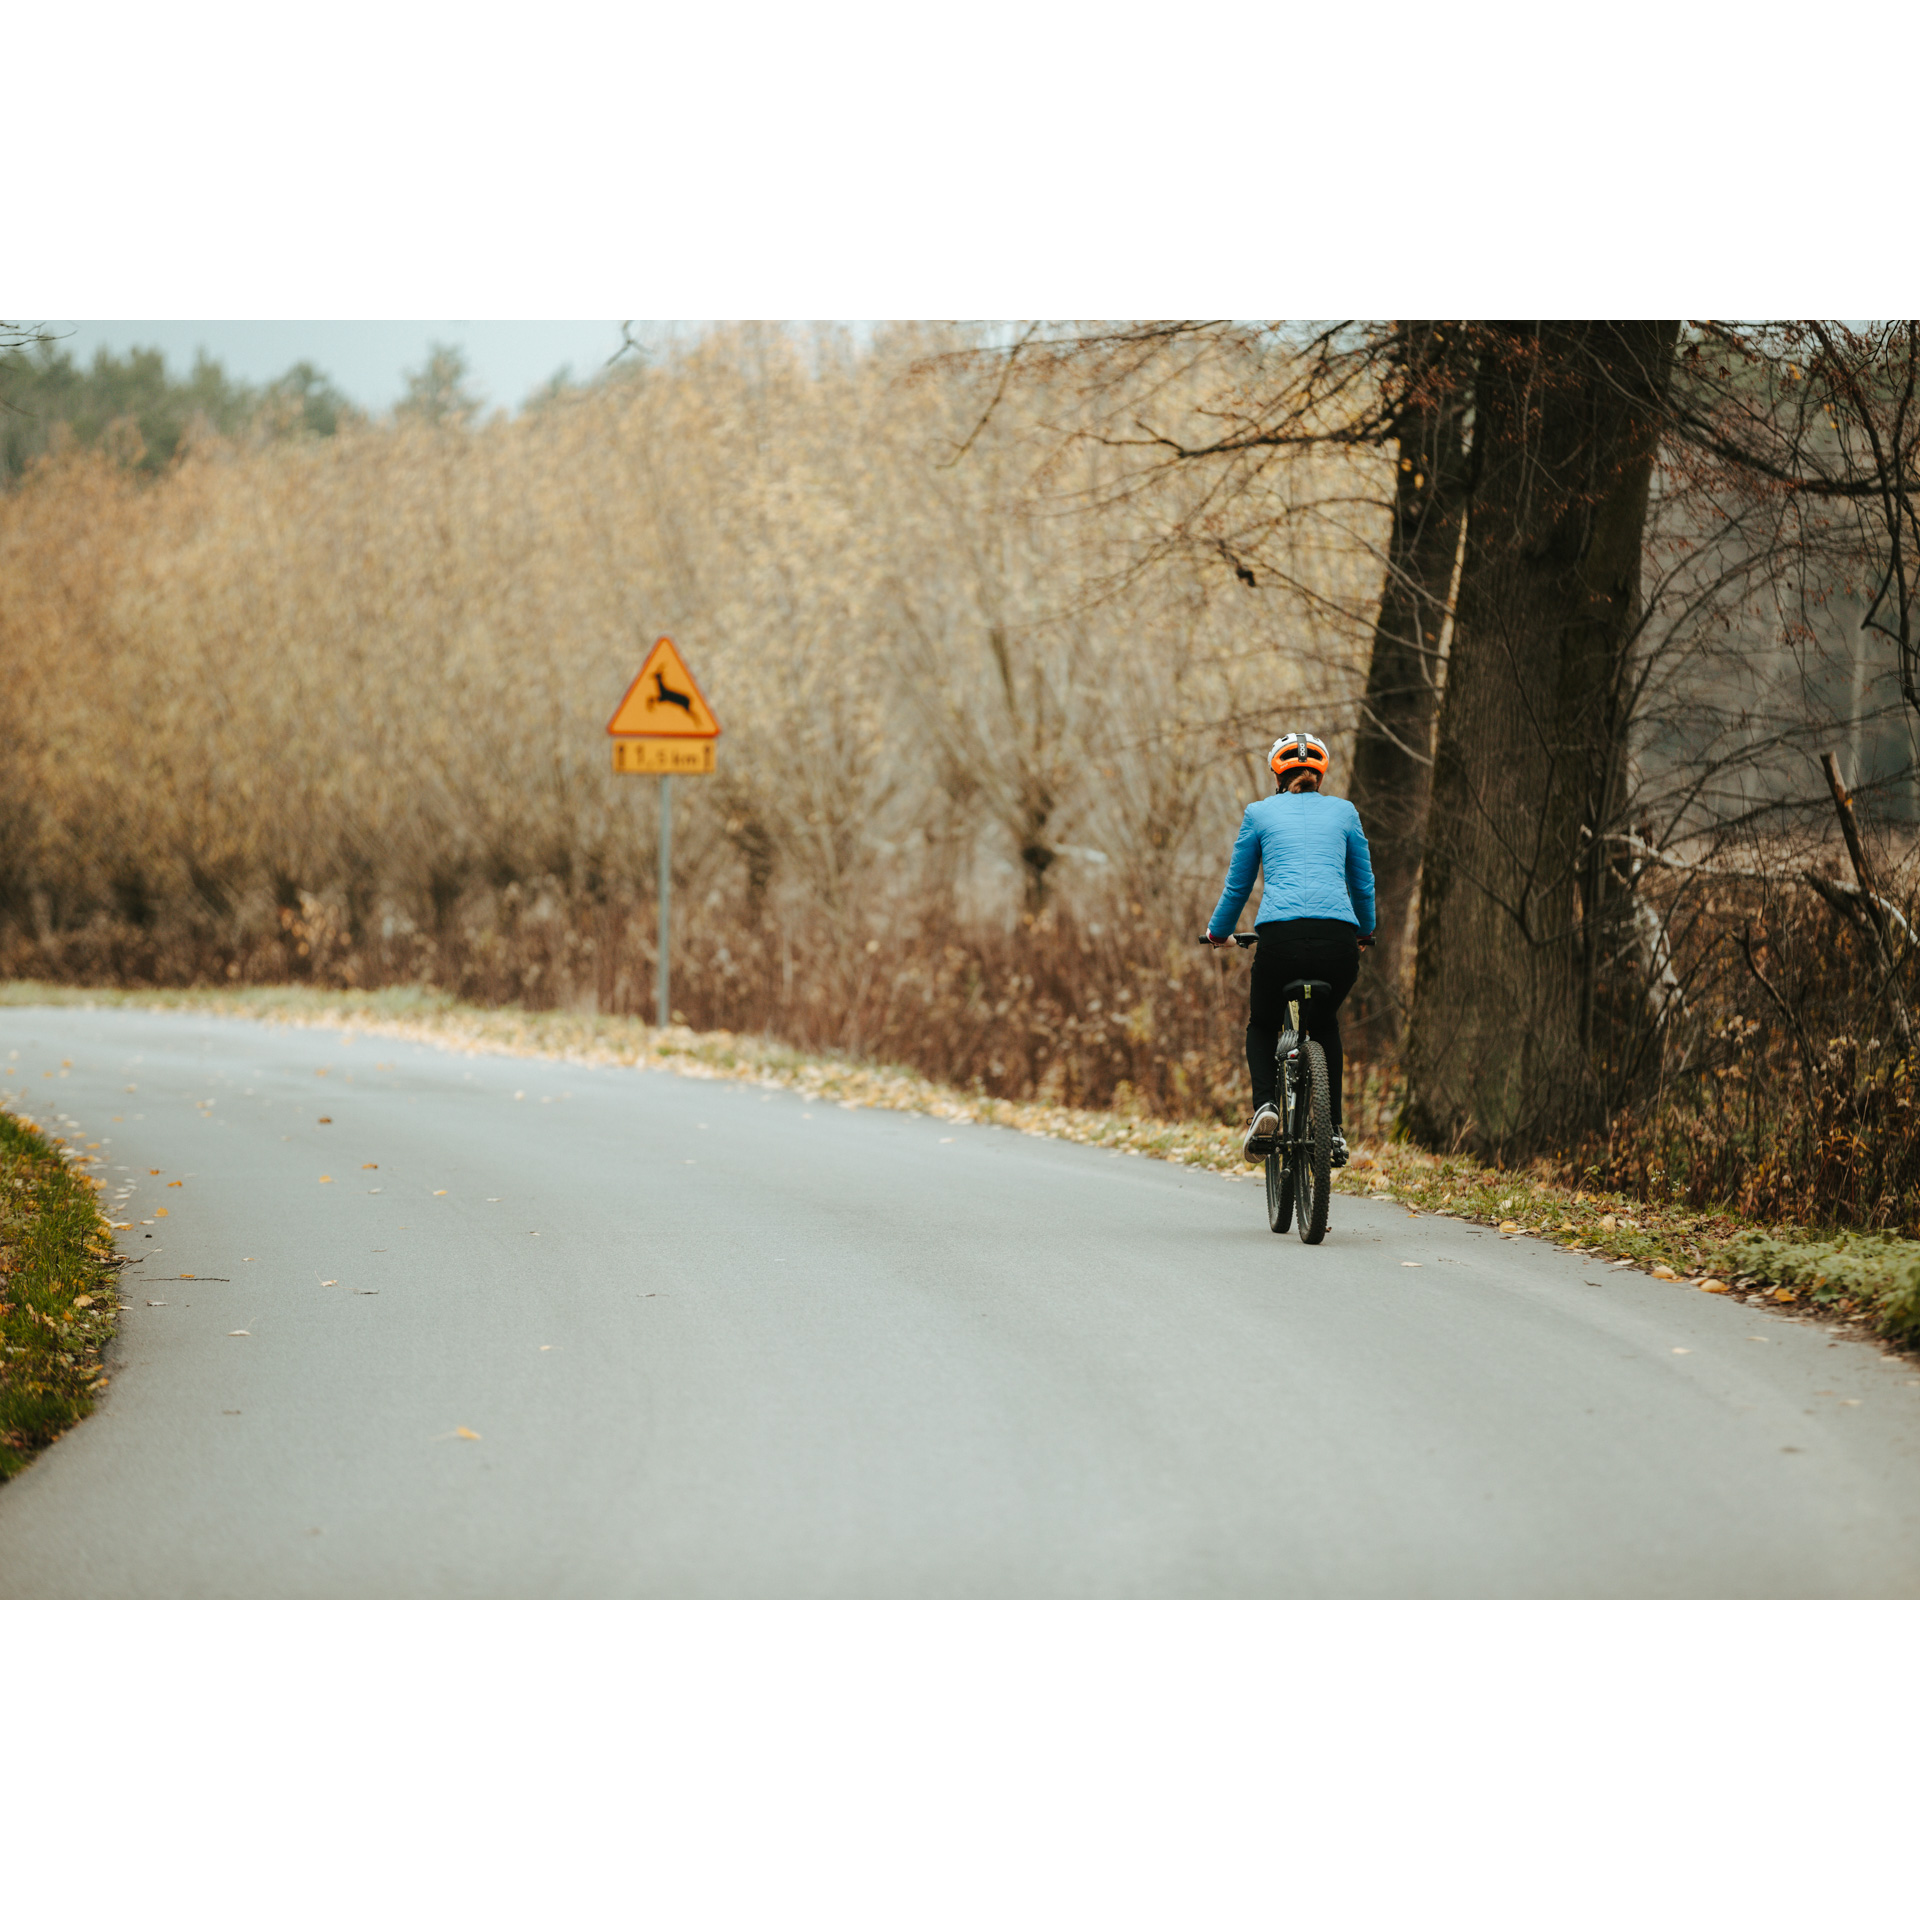 Rowerzystka w niebieskiej kurtce i kasku jadąca rowerem asfaltową drogą z licznymi krzakami na poboczu, mijająca grube pnie drzew